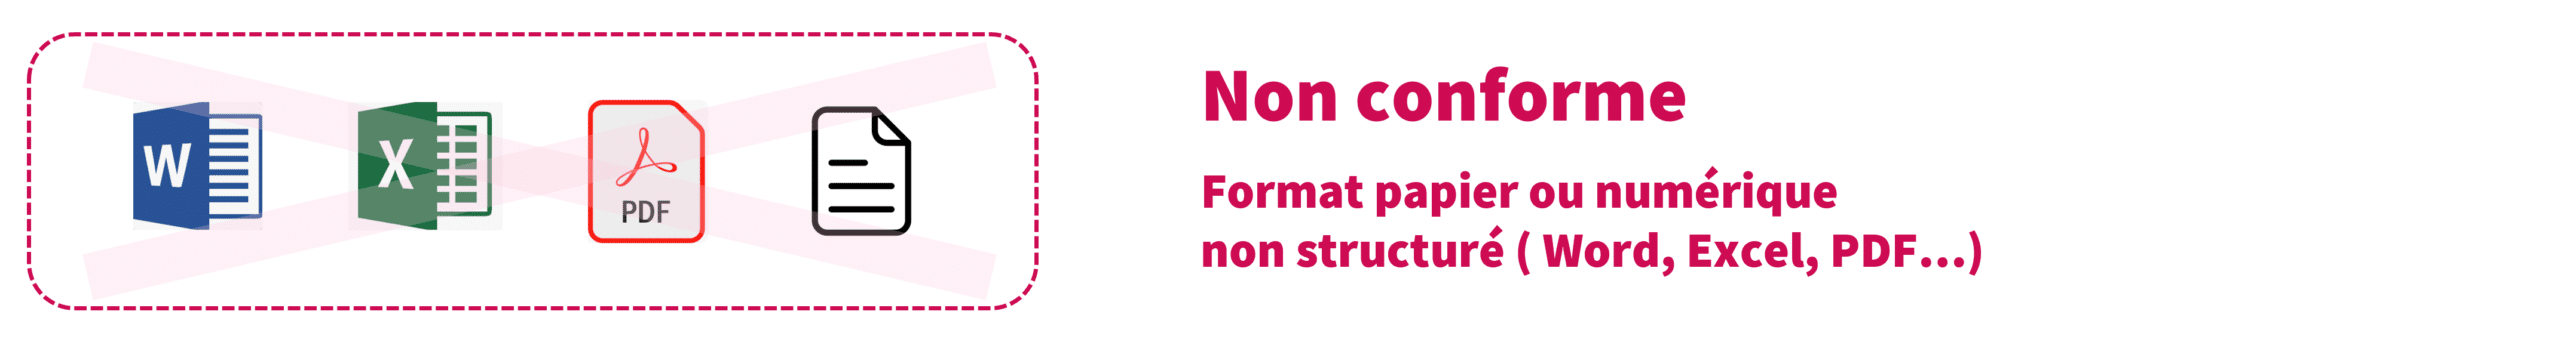 documents non conformes pour la facture électronique word excel pdf